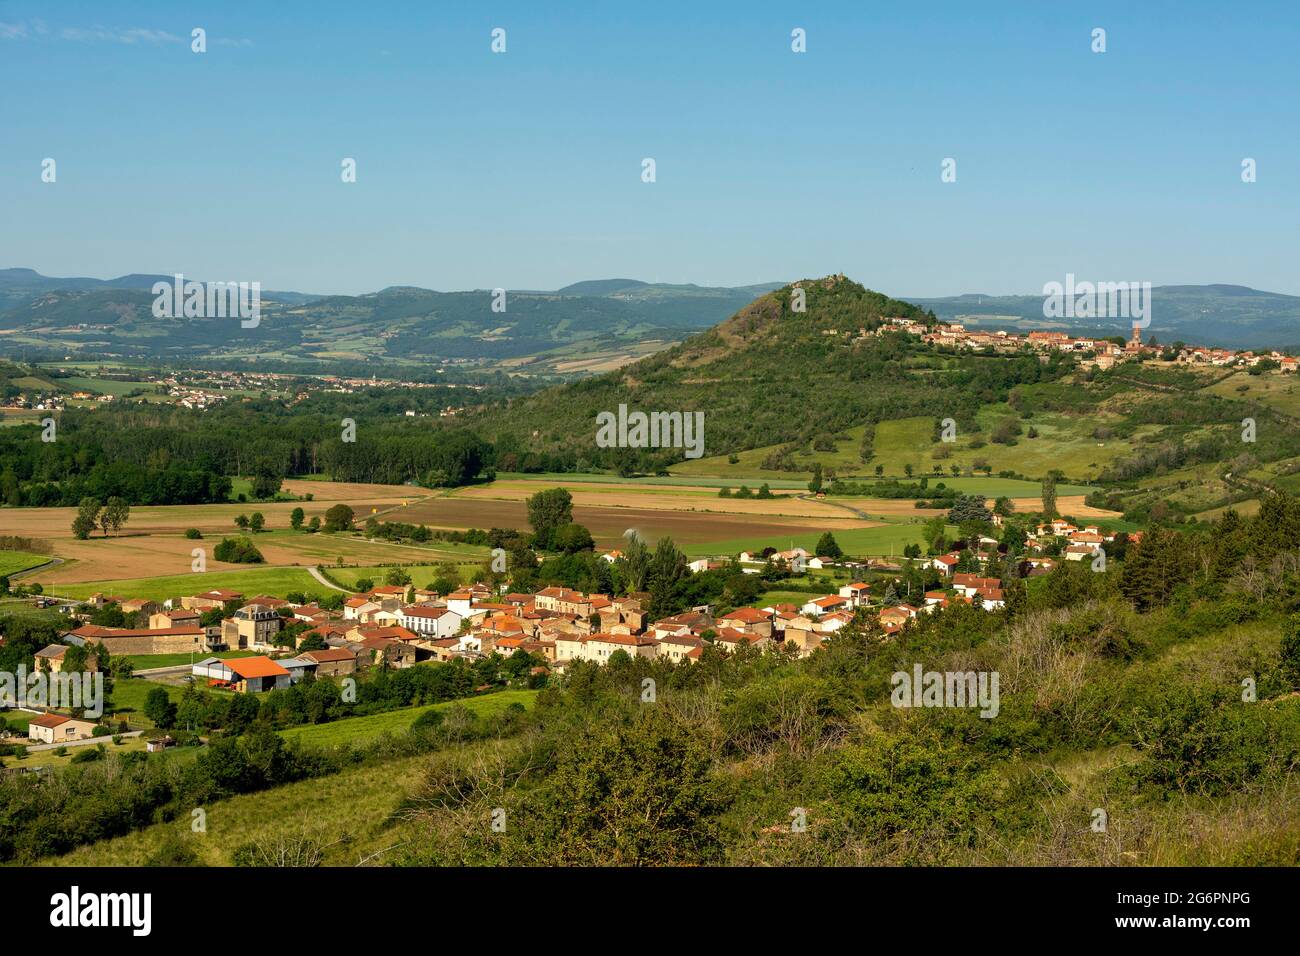 Vue sur les villages d'Orsonnette et de Nonette près de la ville d'Issoire, département du Puy de Dôme, Auvergne-Rhône-Alpes, France Banque D'Images